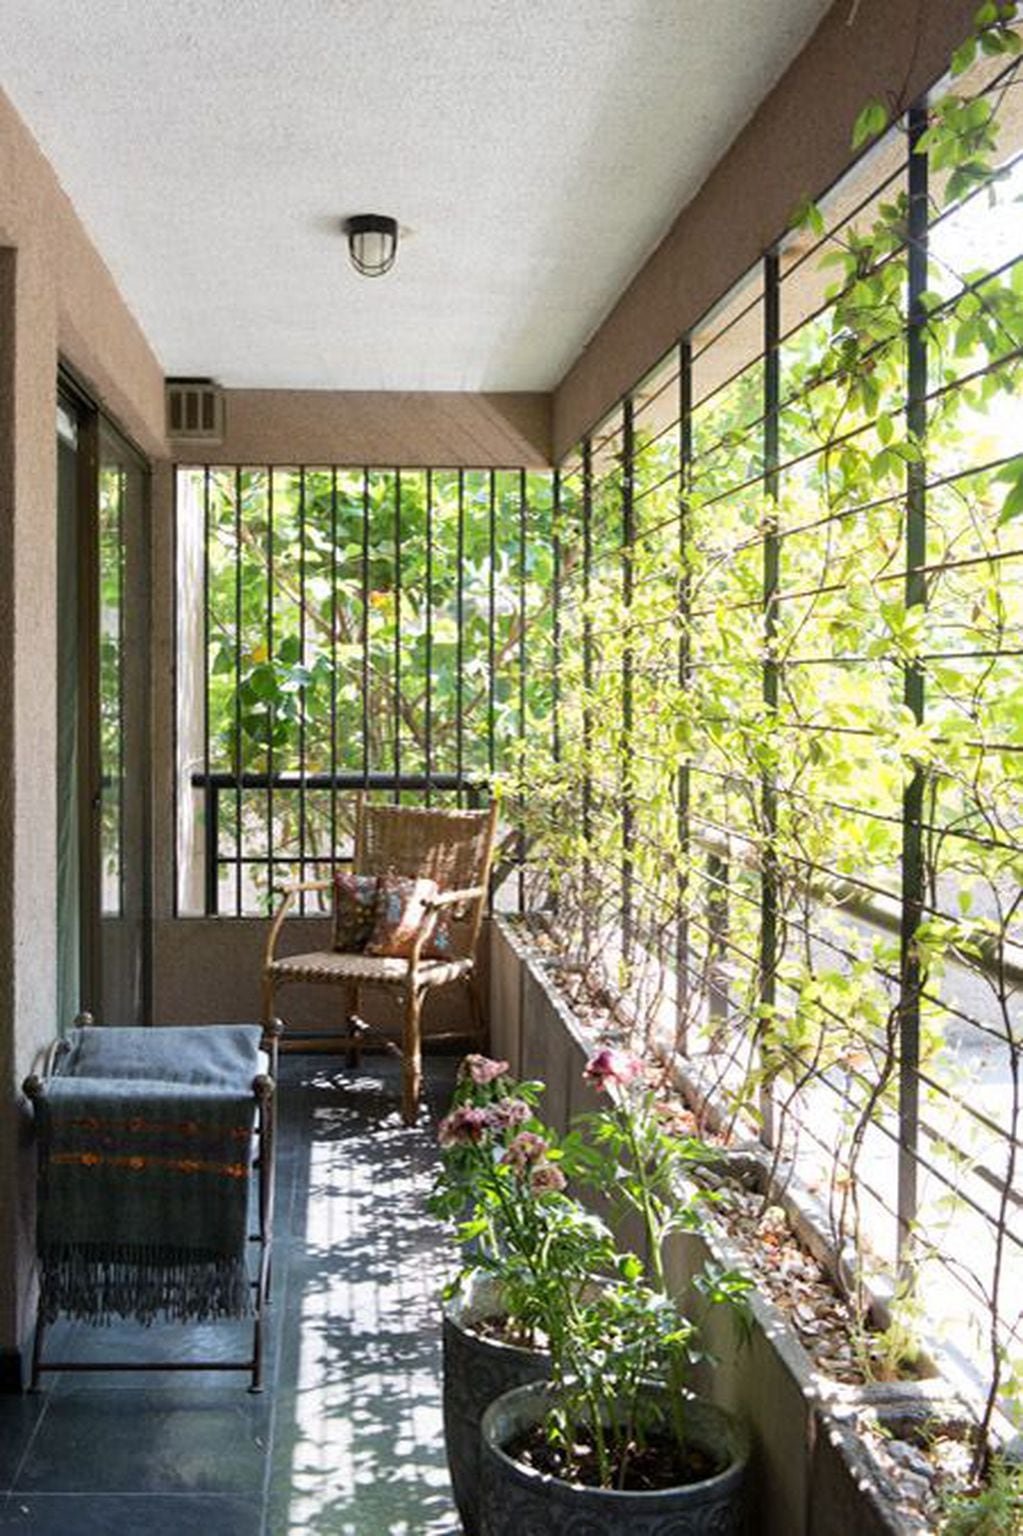 Las enredaderas son las especies más comunes para cubrir paredes o la entrada directa del sol en un balcón.